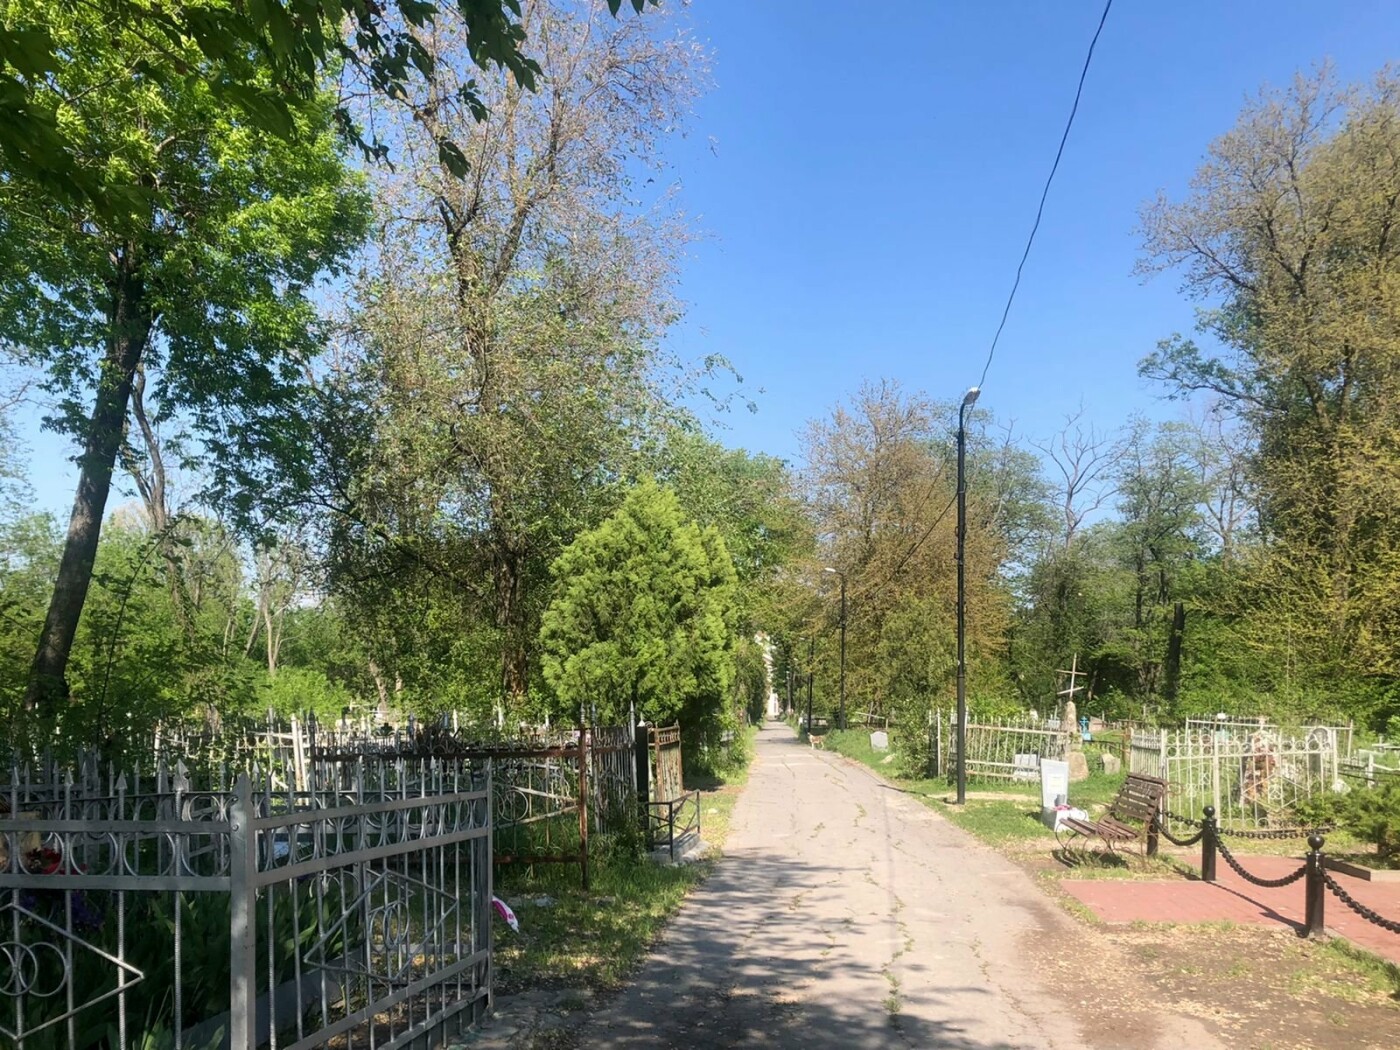 Ростовское кладбище